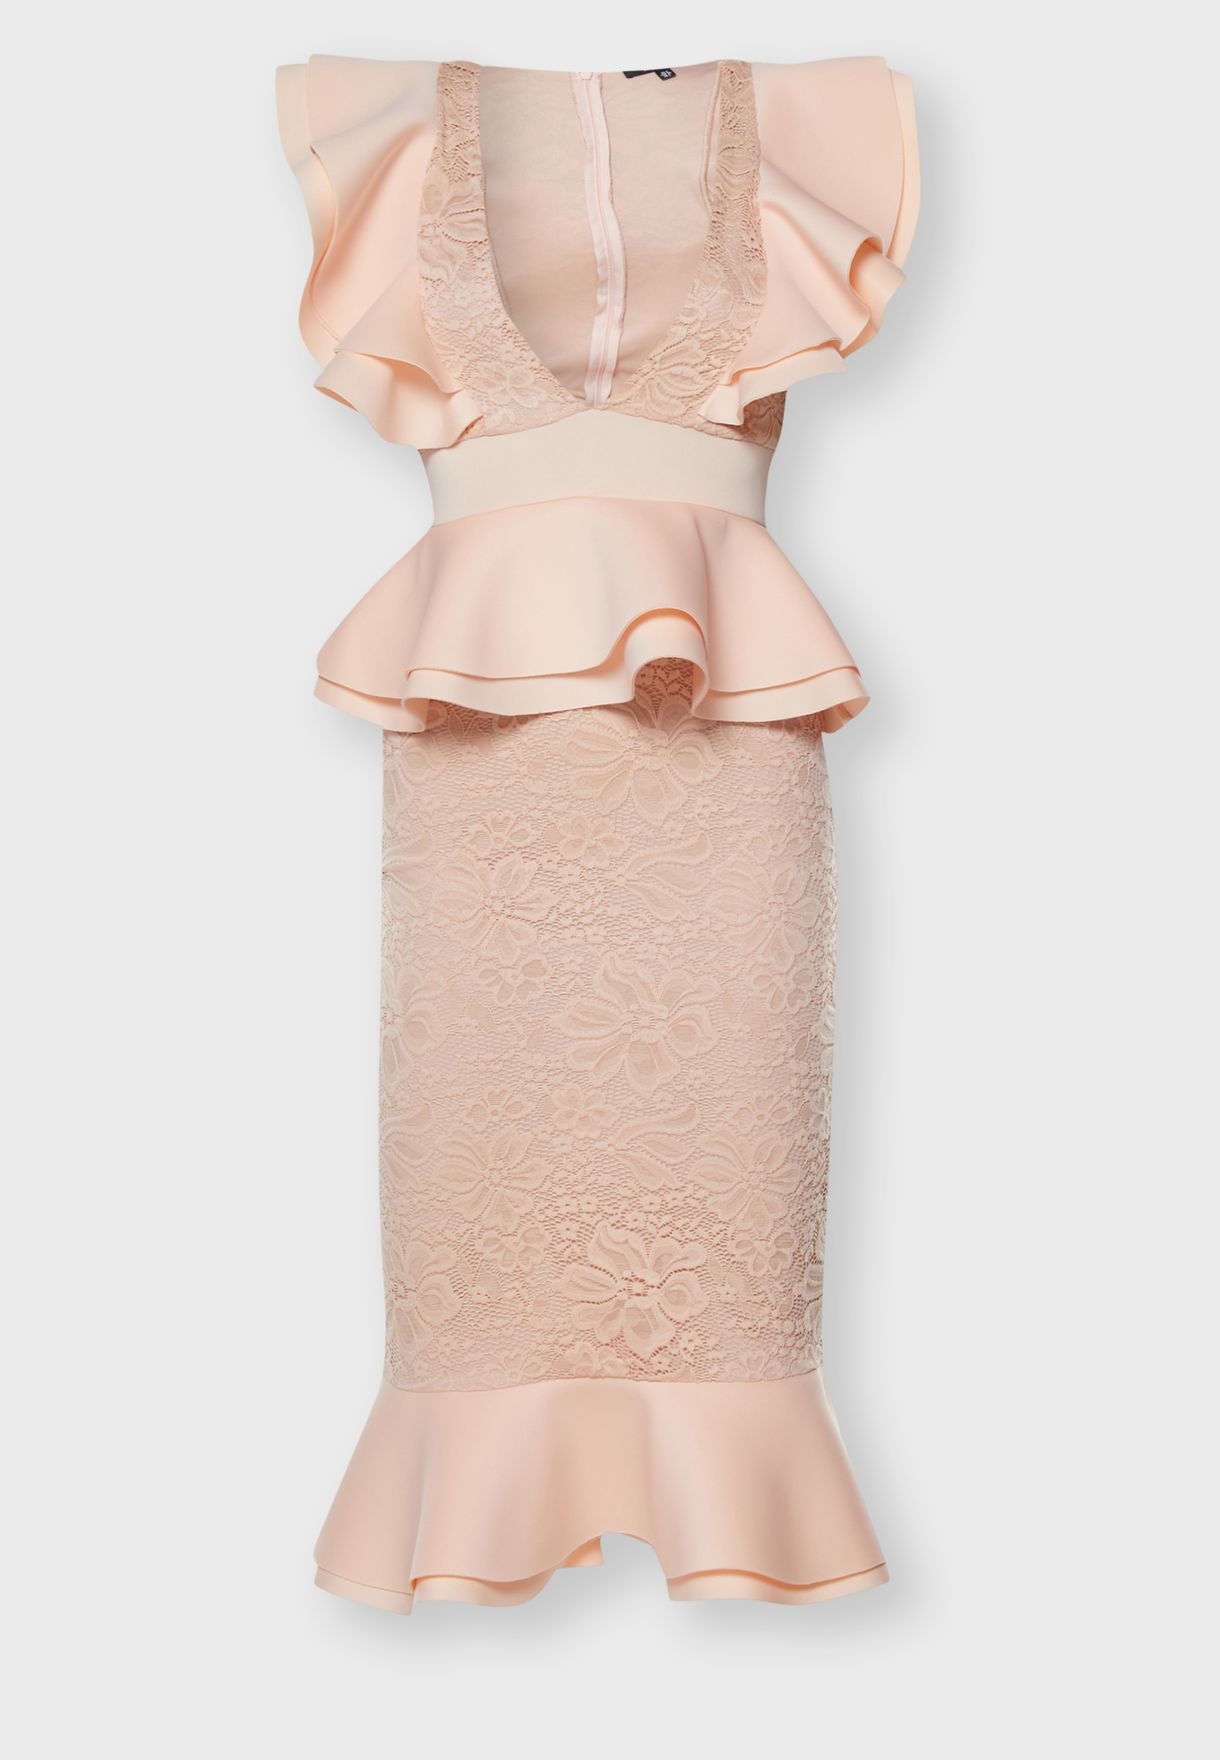 pink lace ruffle dress